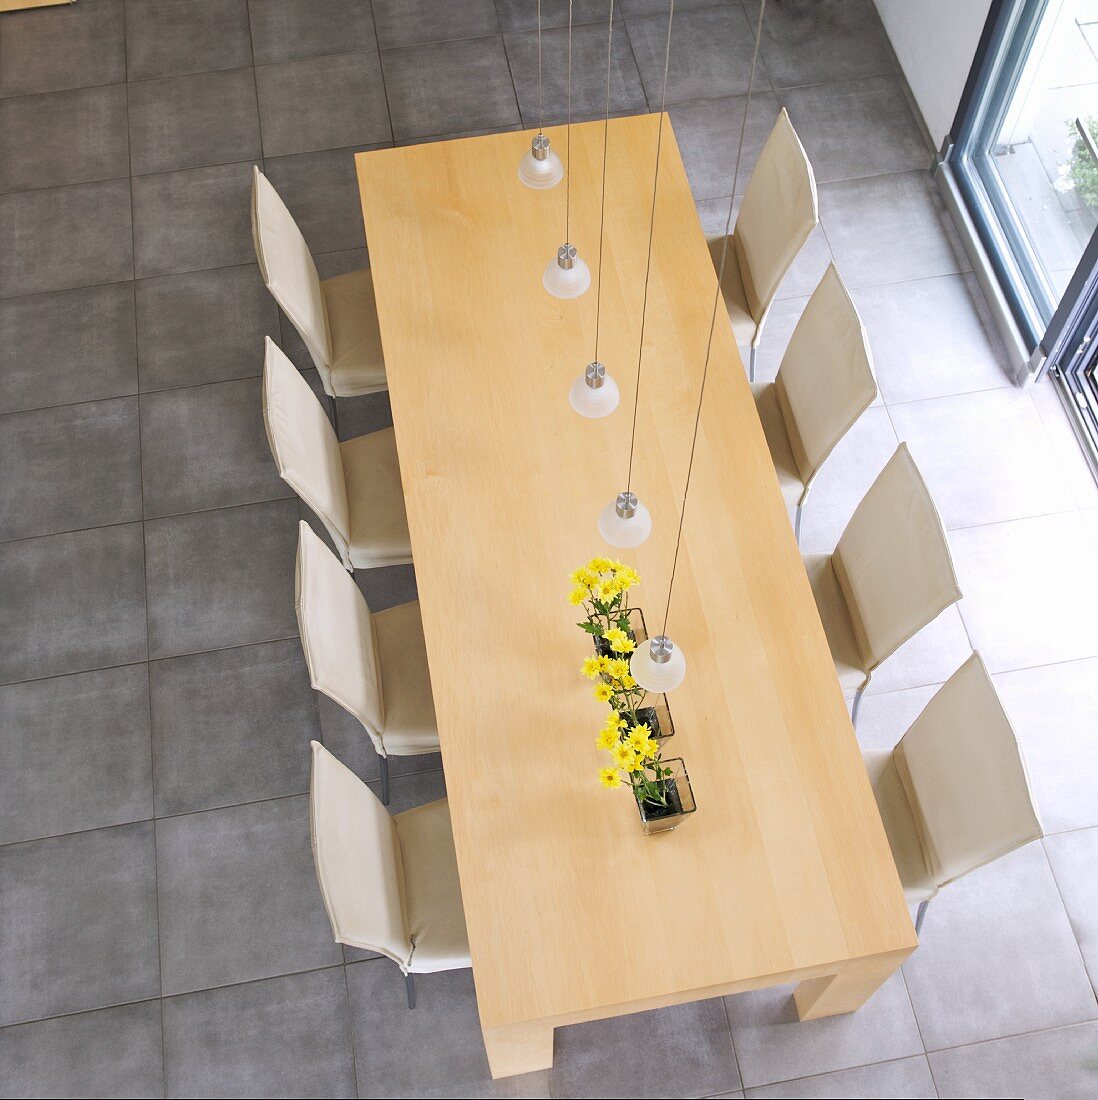 Blick von oben auf Esstisch aus Holz und Stühlen mit hellem Bezug auf hellgrauem Steinboden in minimalistischem Ambiente